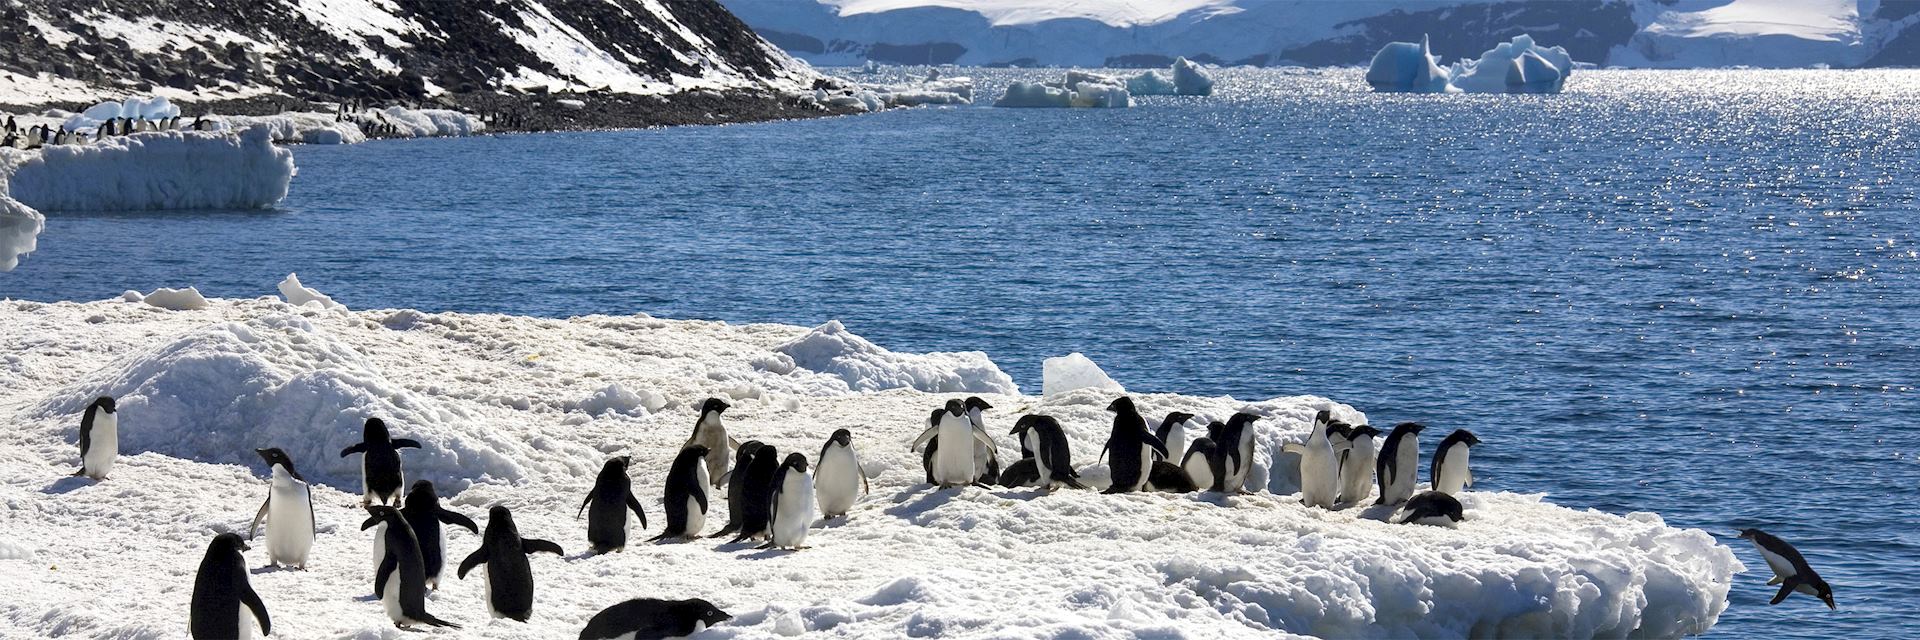 Adélie penguins, Antarctic Peninsula